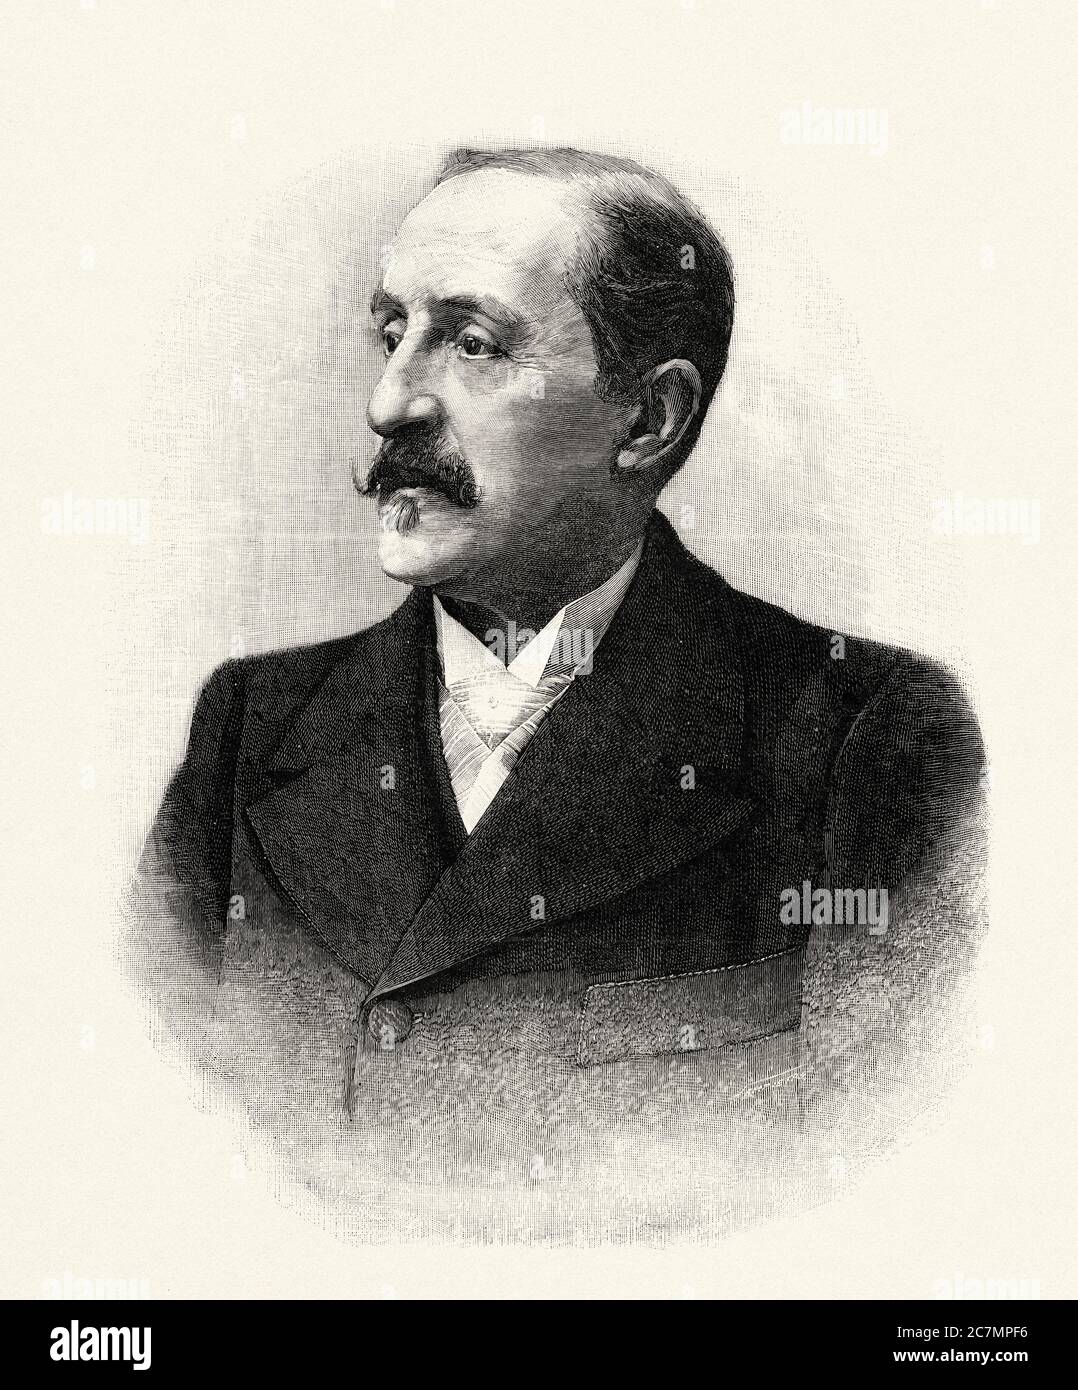 Luis Alvarez Catalá (Madrid, 1836 – 1901) è stato un pittore e ritrattista spagnolo, direttore del Museo Nazionale del Prado. Da la Ilustracion Española y americana 1895 Foto Stock